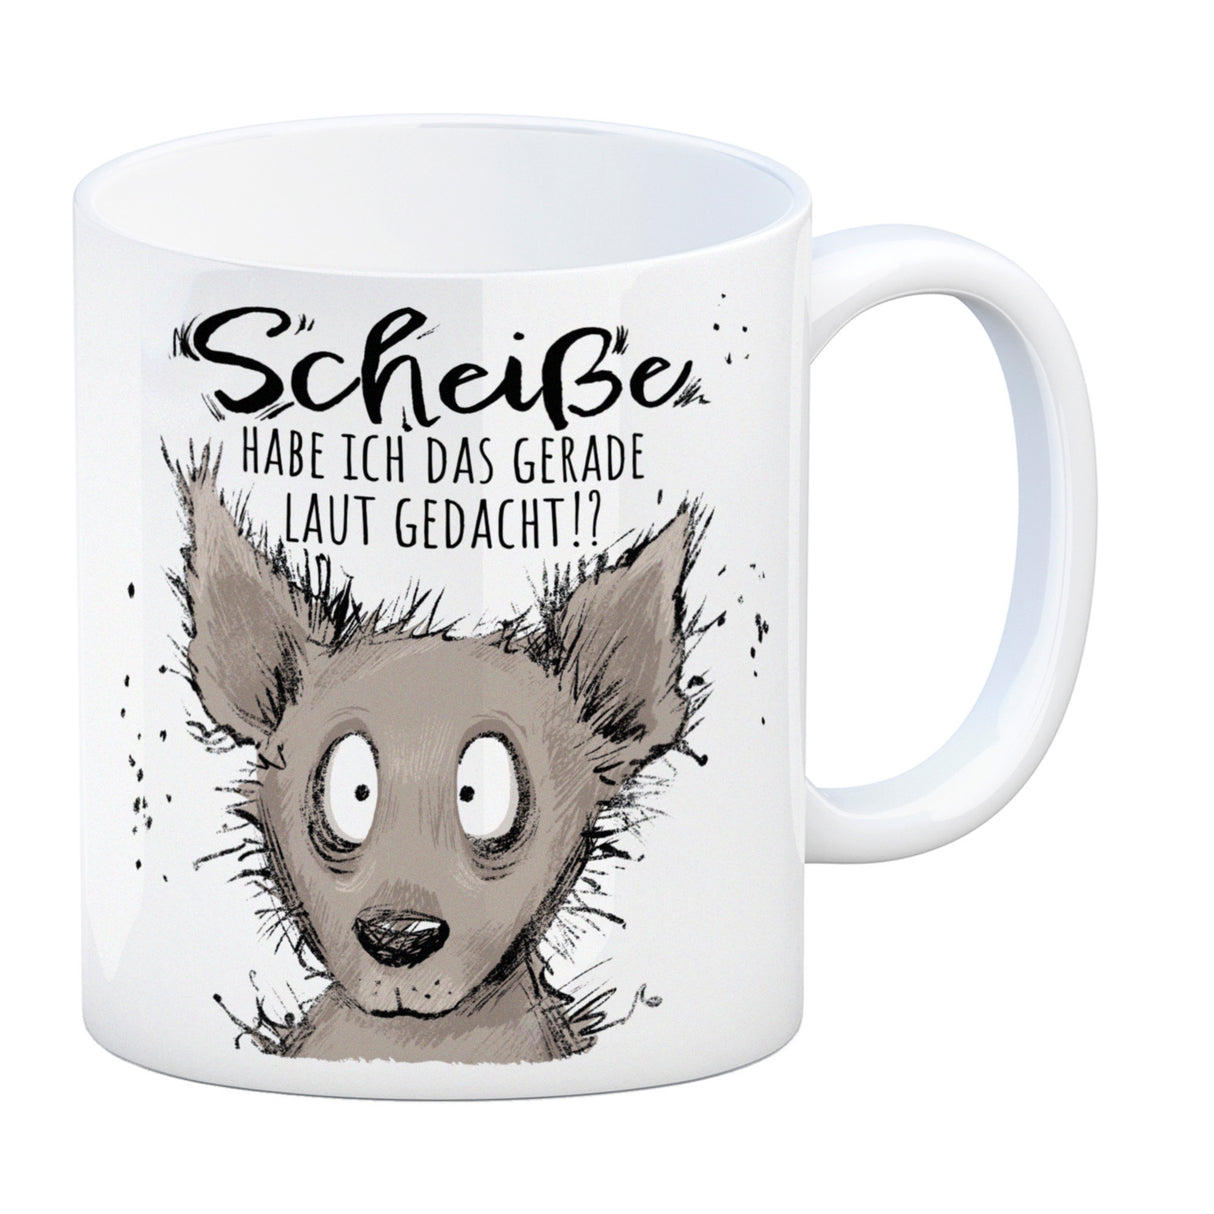 Wolf Kaffeebecher mit Spruch wirklich laut gedacht?